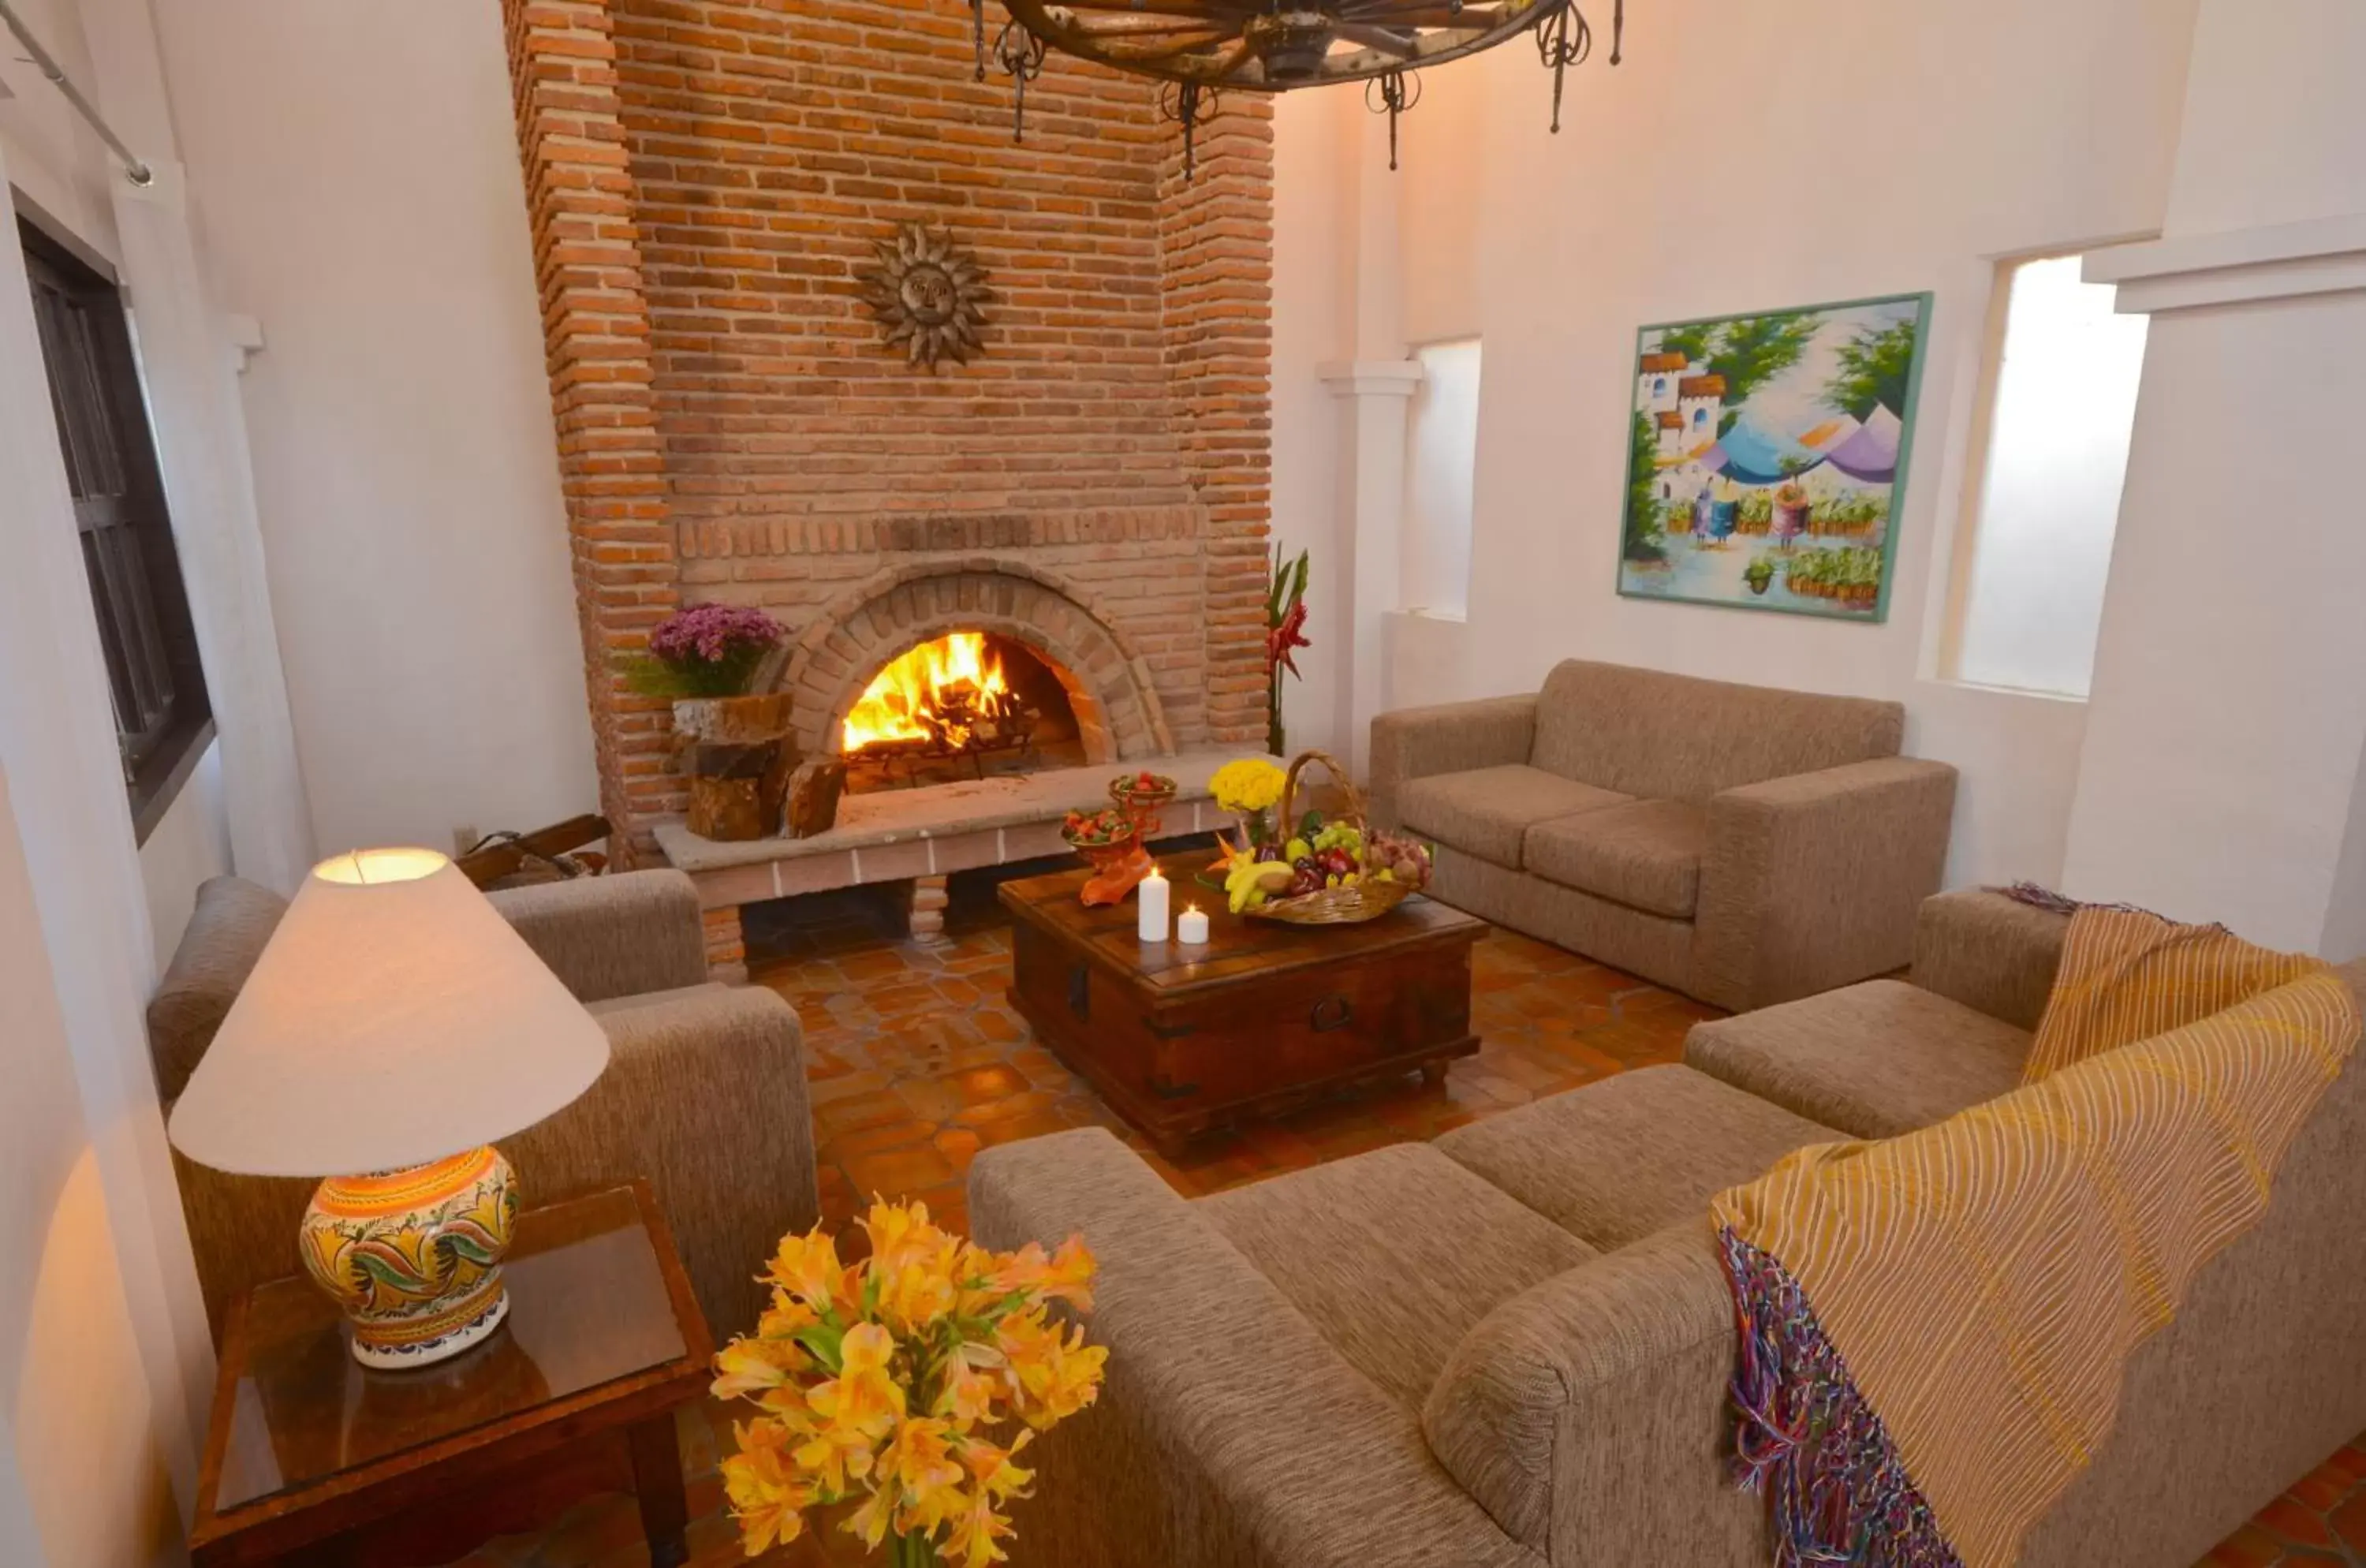 Photo of the whole room, Seating Area in Villas Danza del Sol